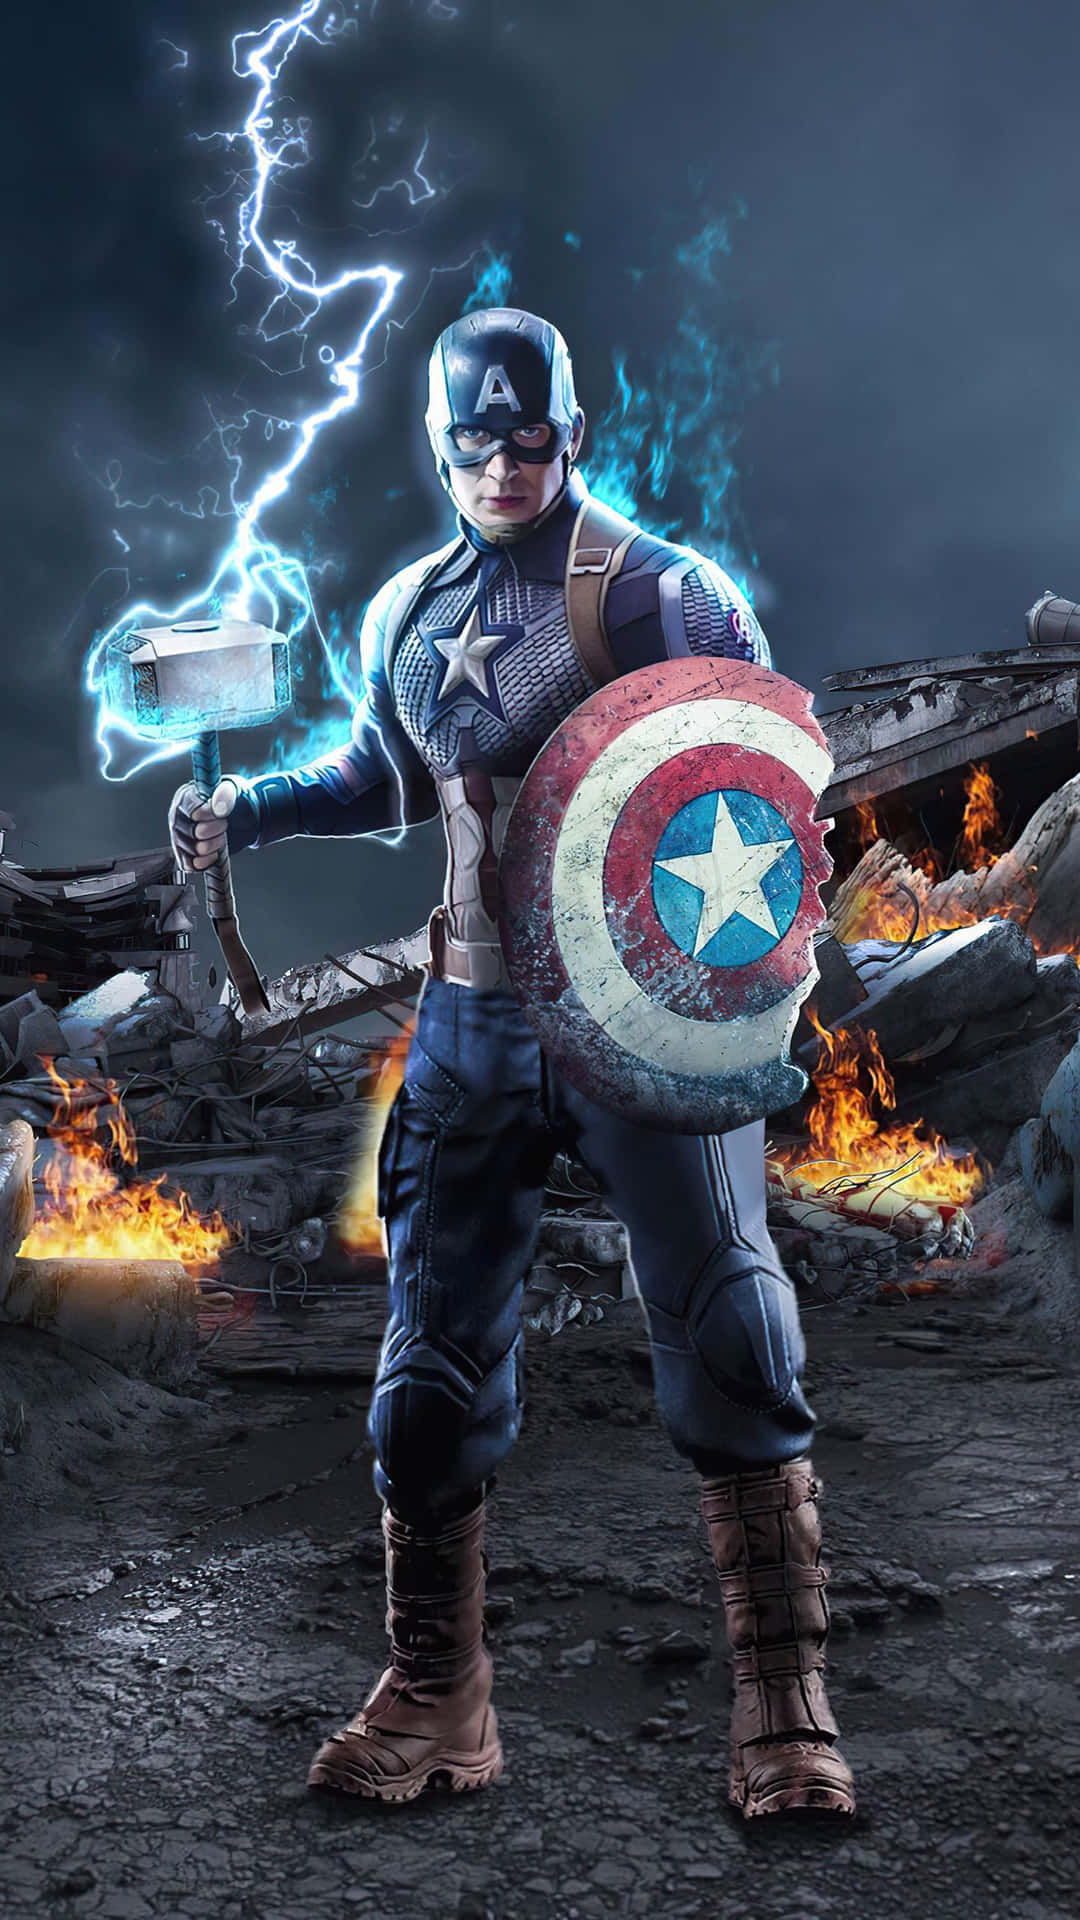 Fondode Pantalla De Capitán América Con Mjölnir En Primer Plano